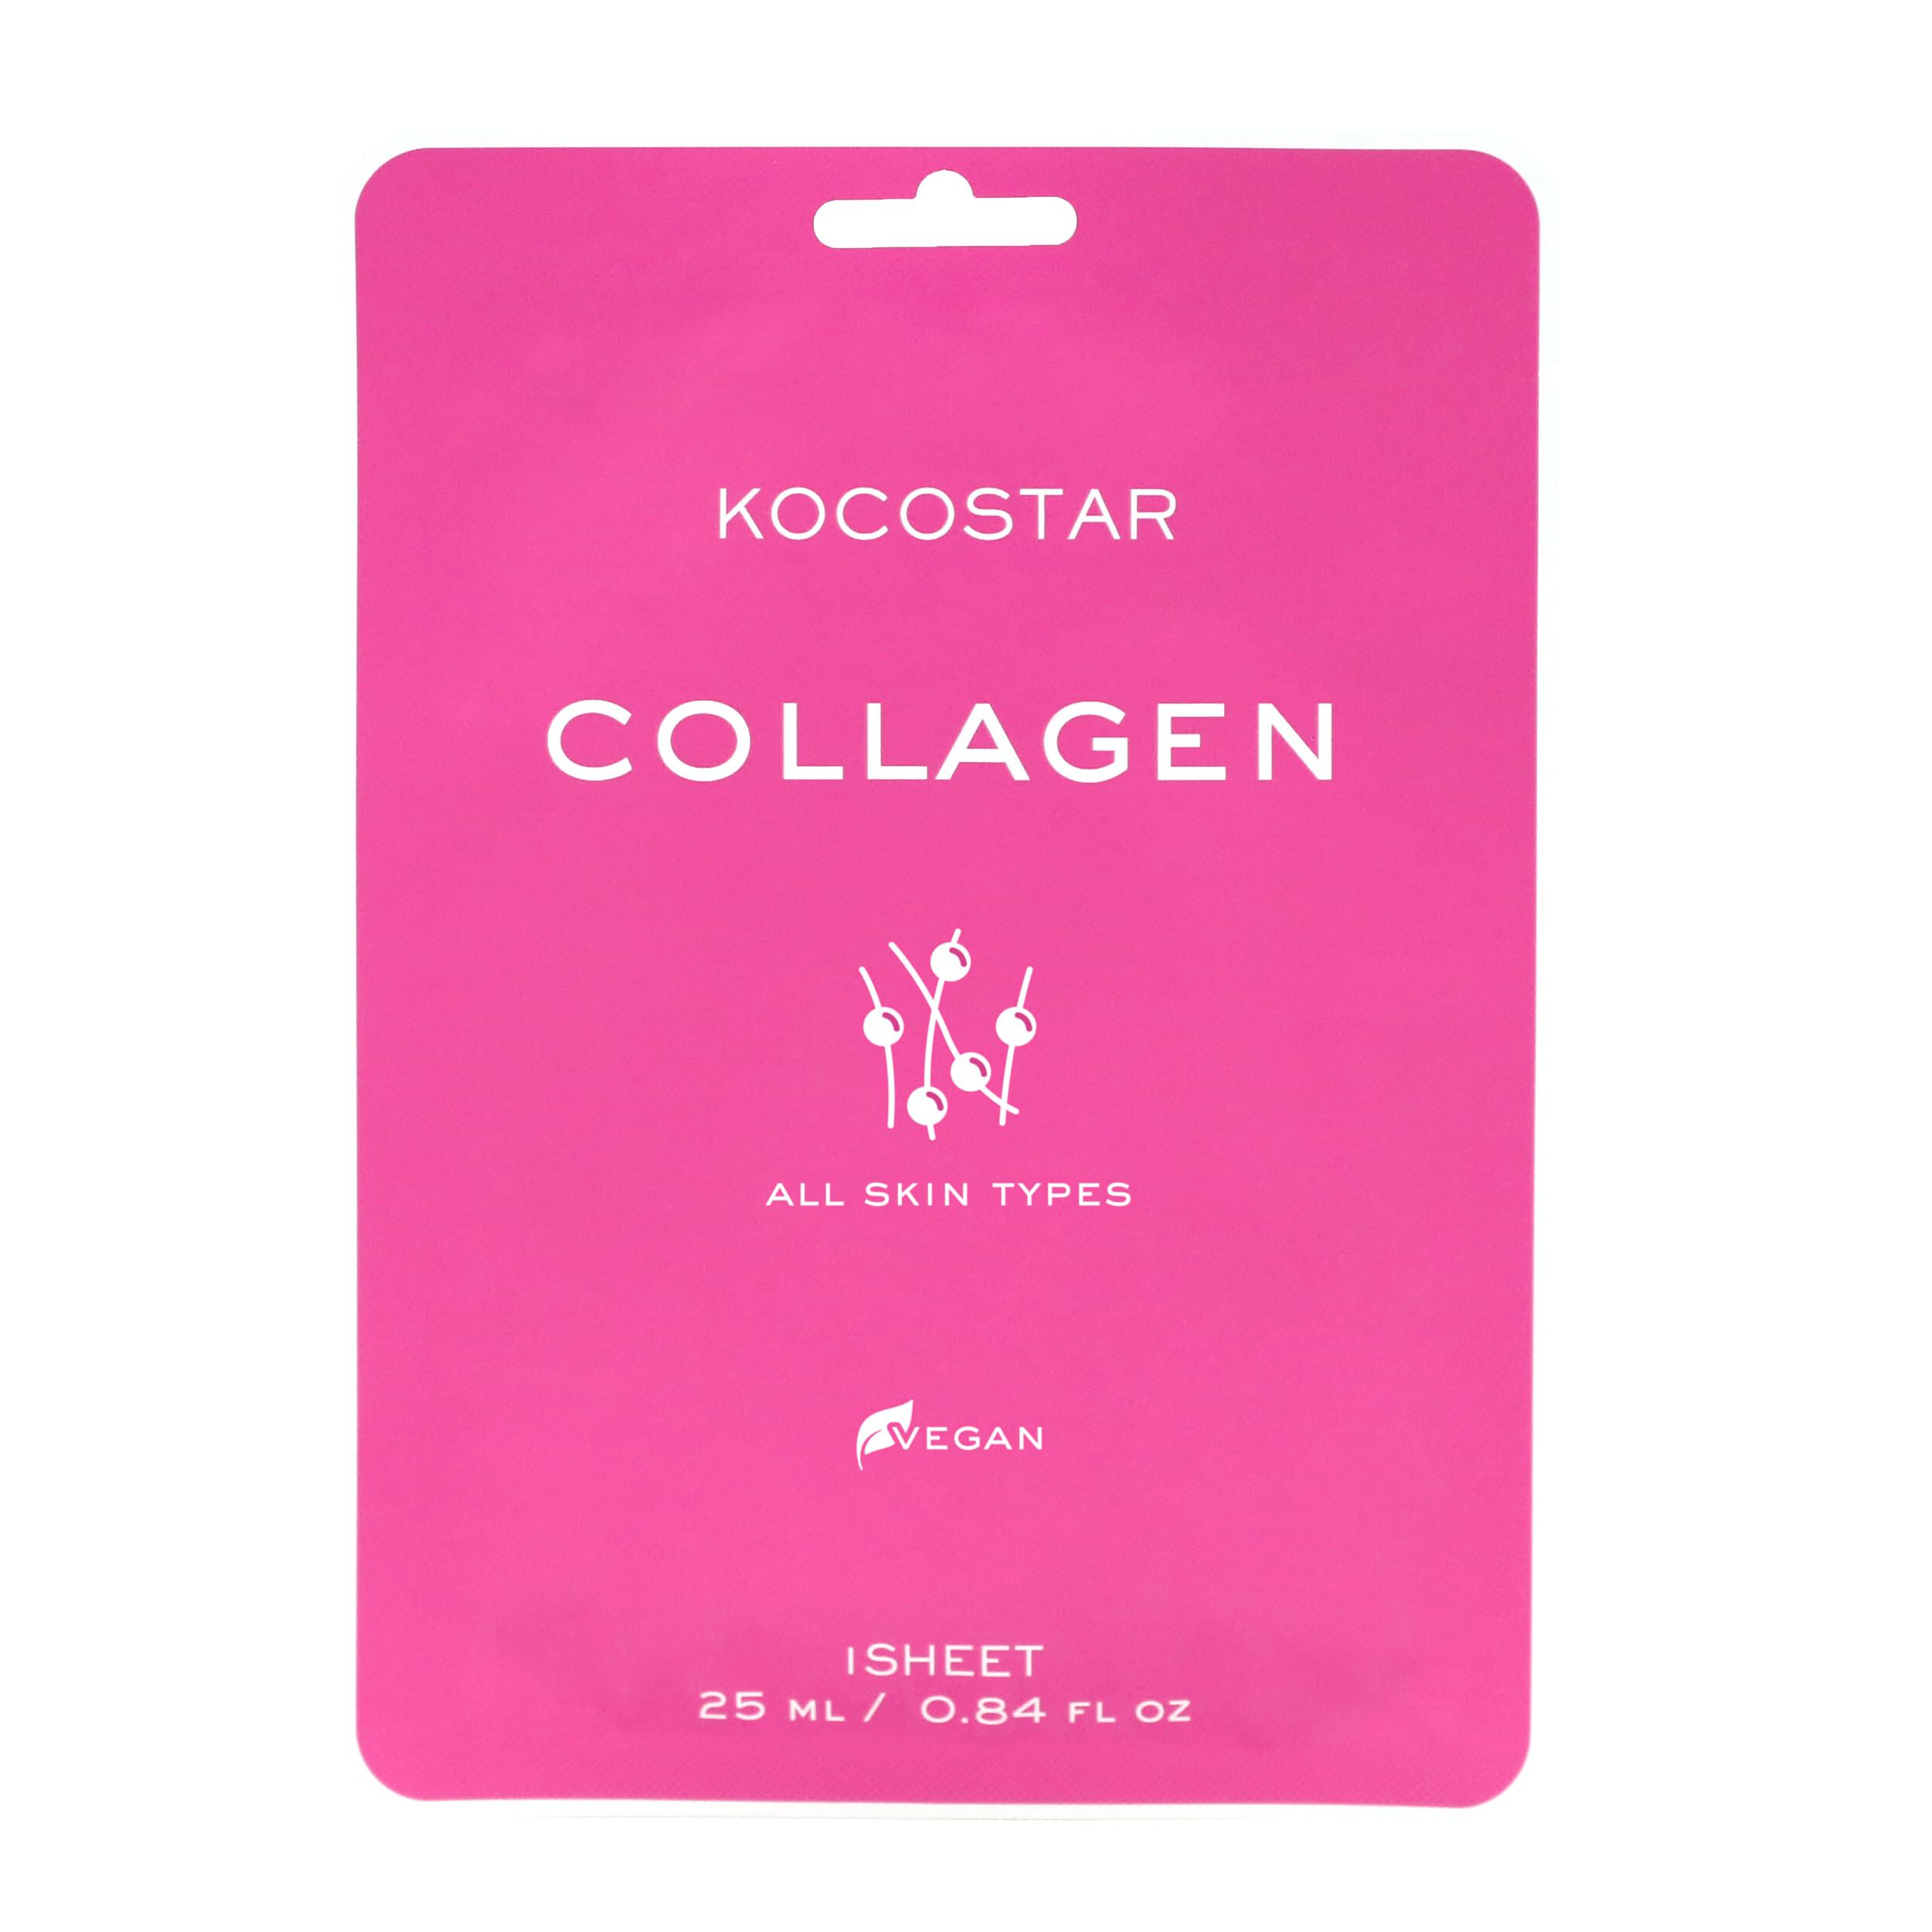 гидрогелевая маска для лица kocostar collagen 1 шт Маска для лица Kocostar Collagen, 25 мл